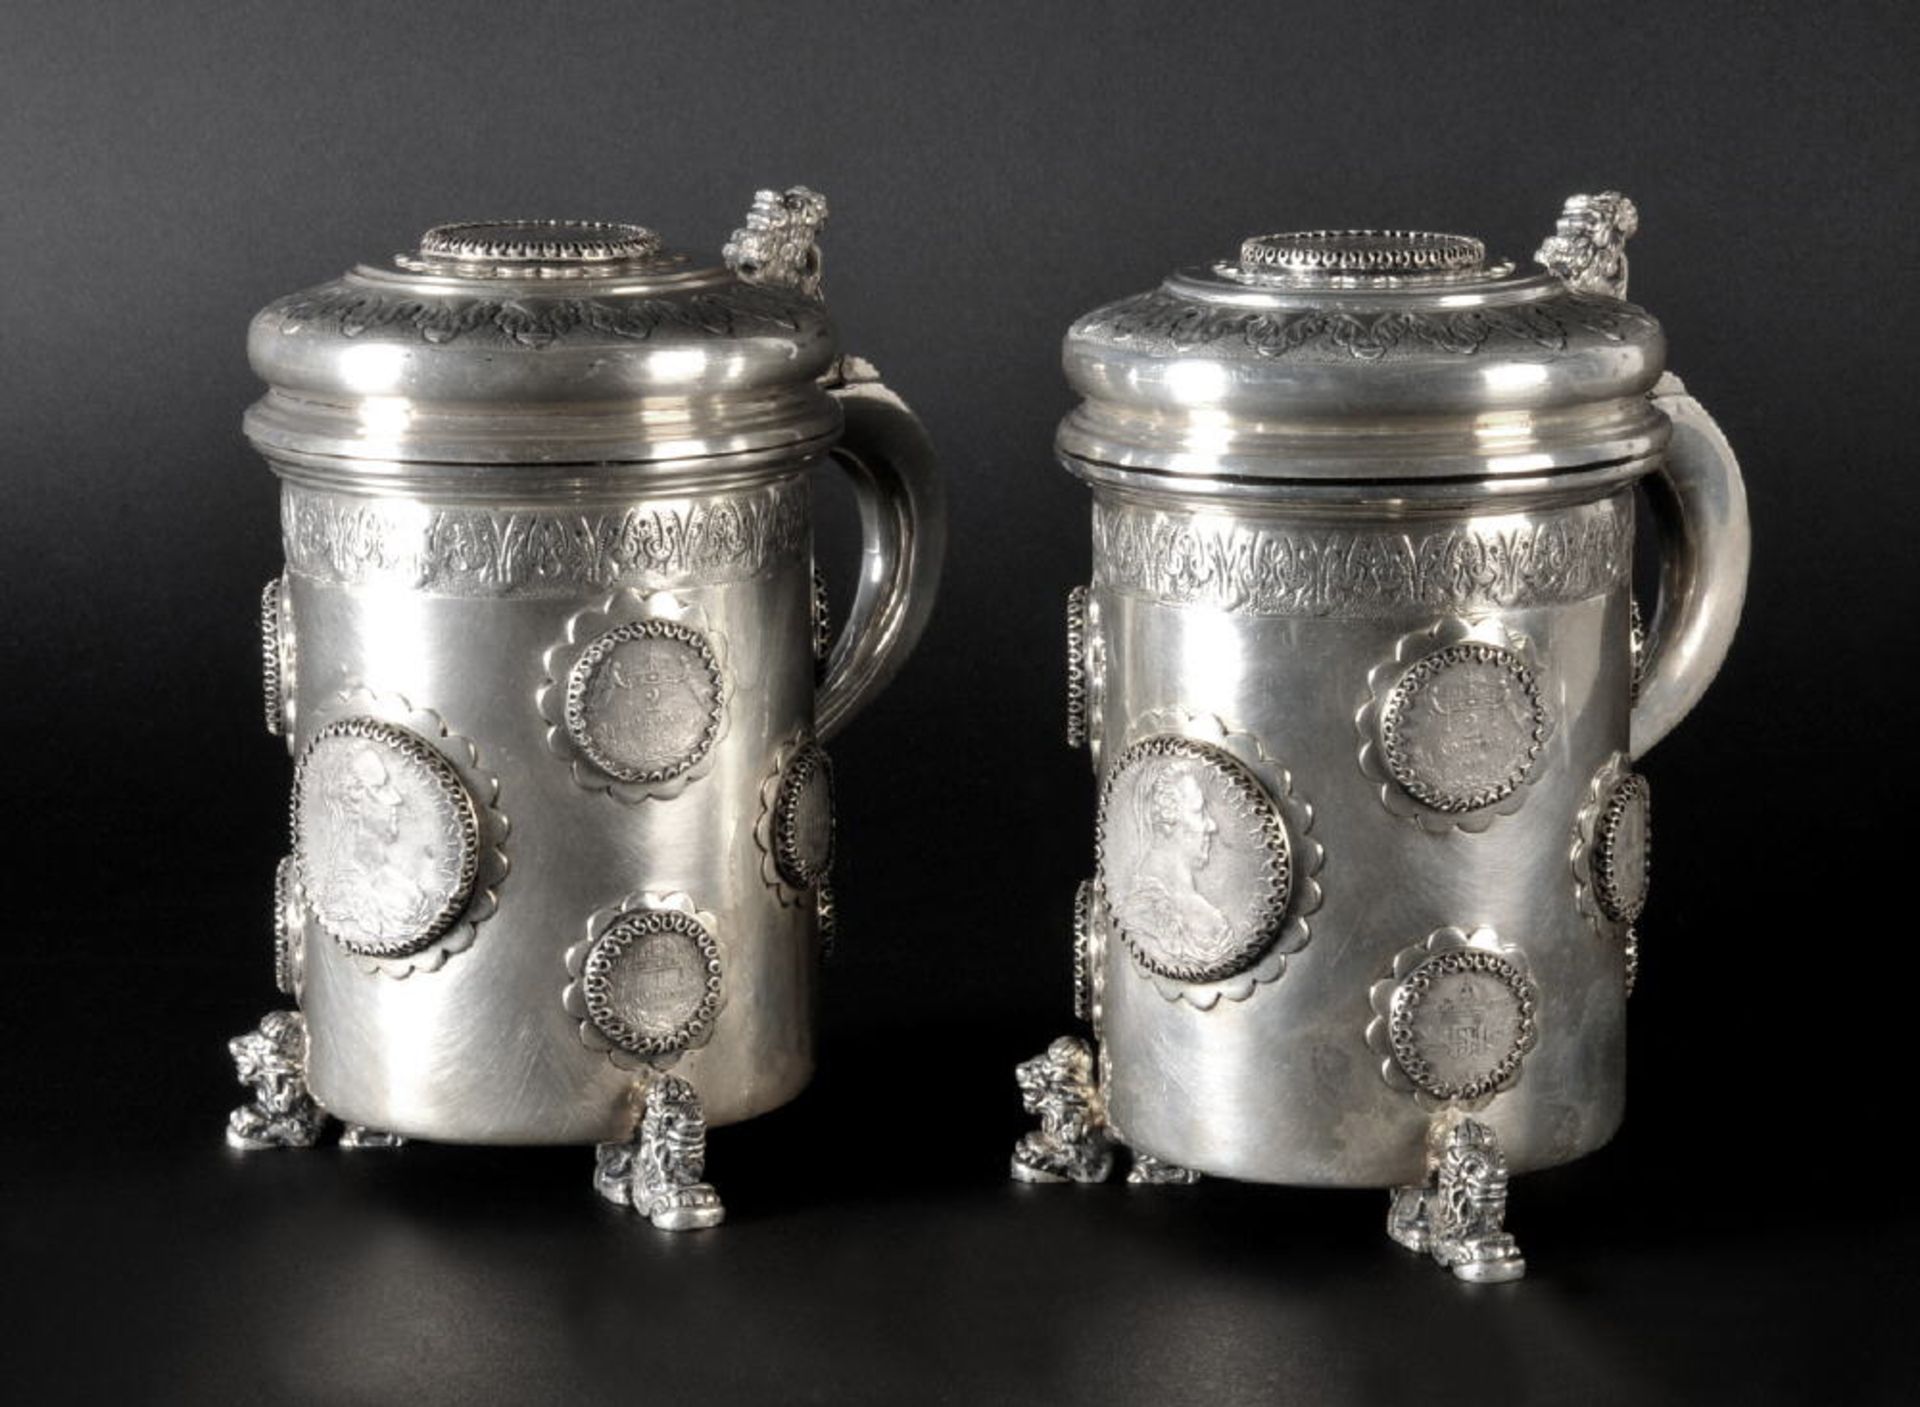 Bierhumpen mit Klappdeckeln, 2 Stück - Münzhumpen835 Silber, 1824 g, Dekor mit 12 montierten